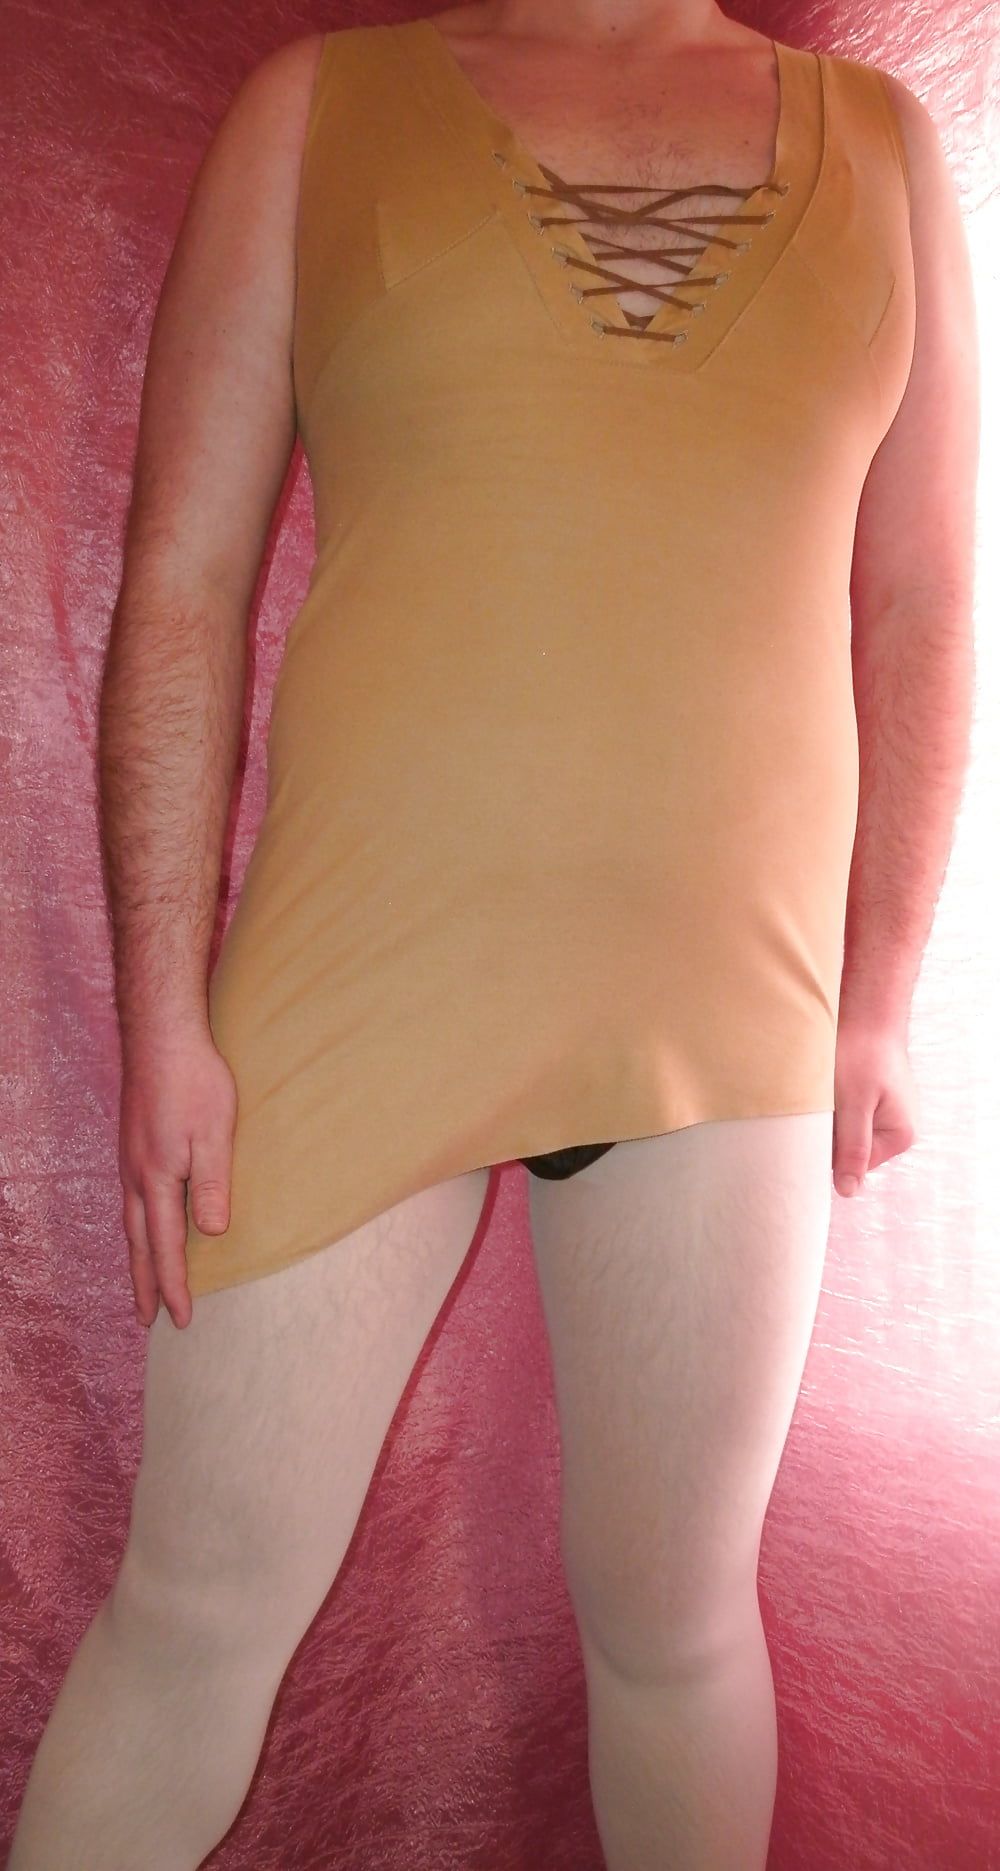  Sissy Boy Lovelaska  - Super ass under a sexy dress